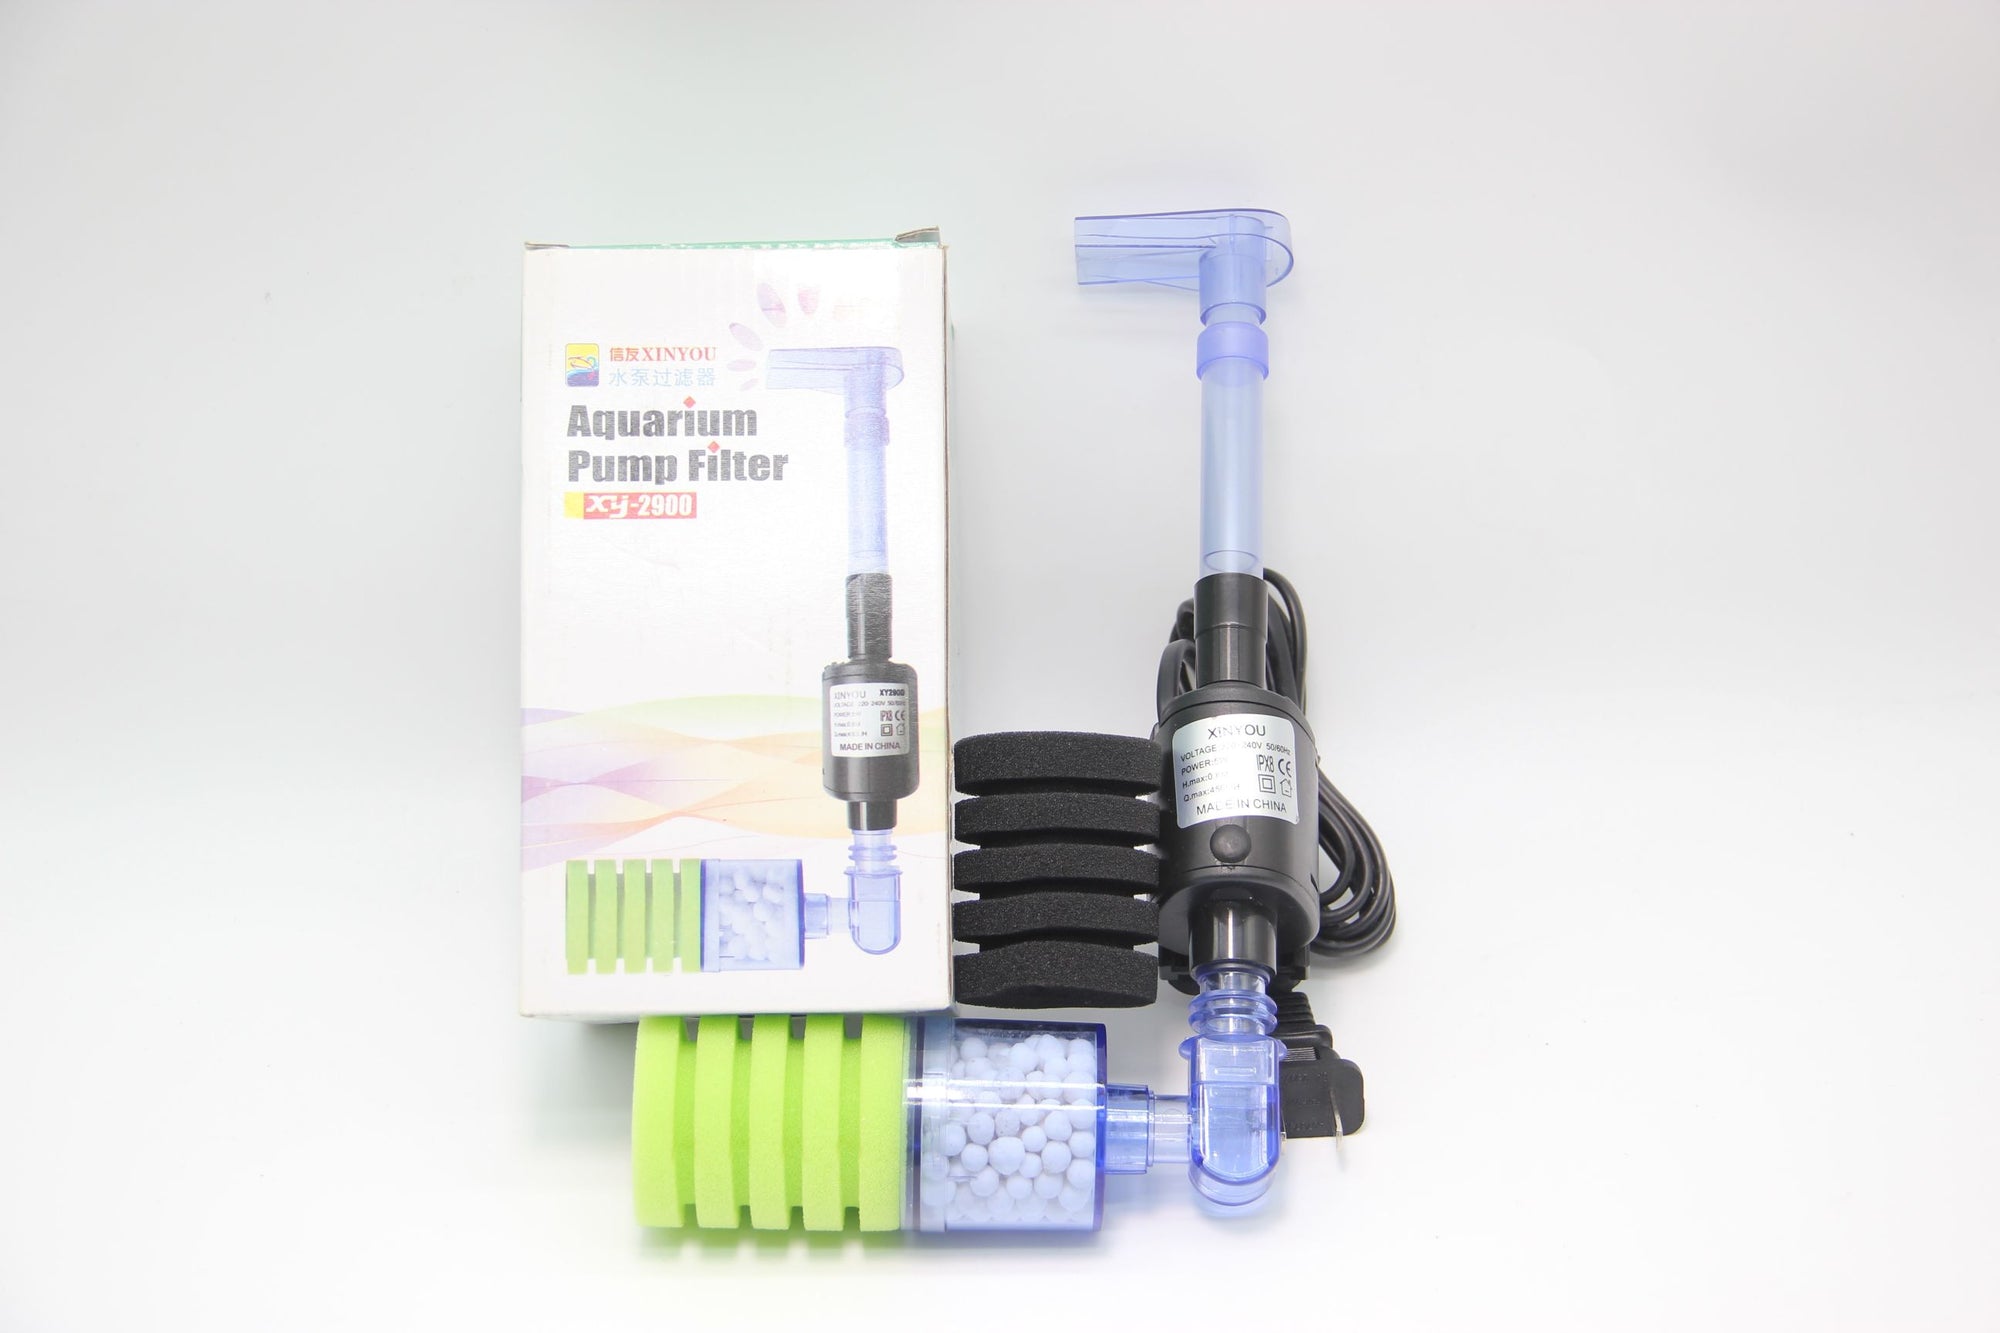 Xin You XY-2900 Aquarium Pump Filter